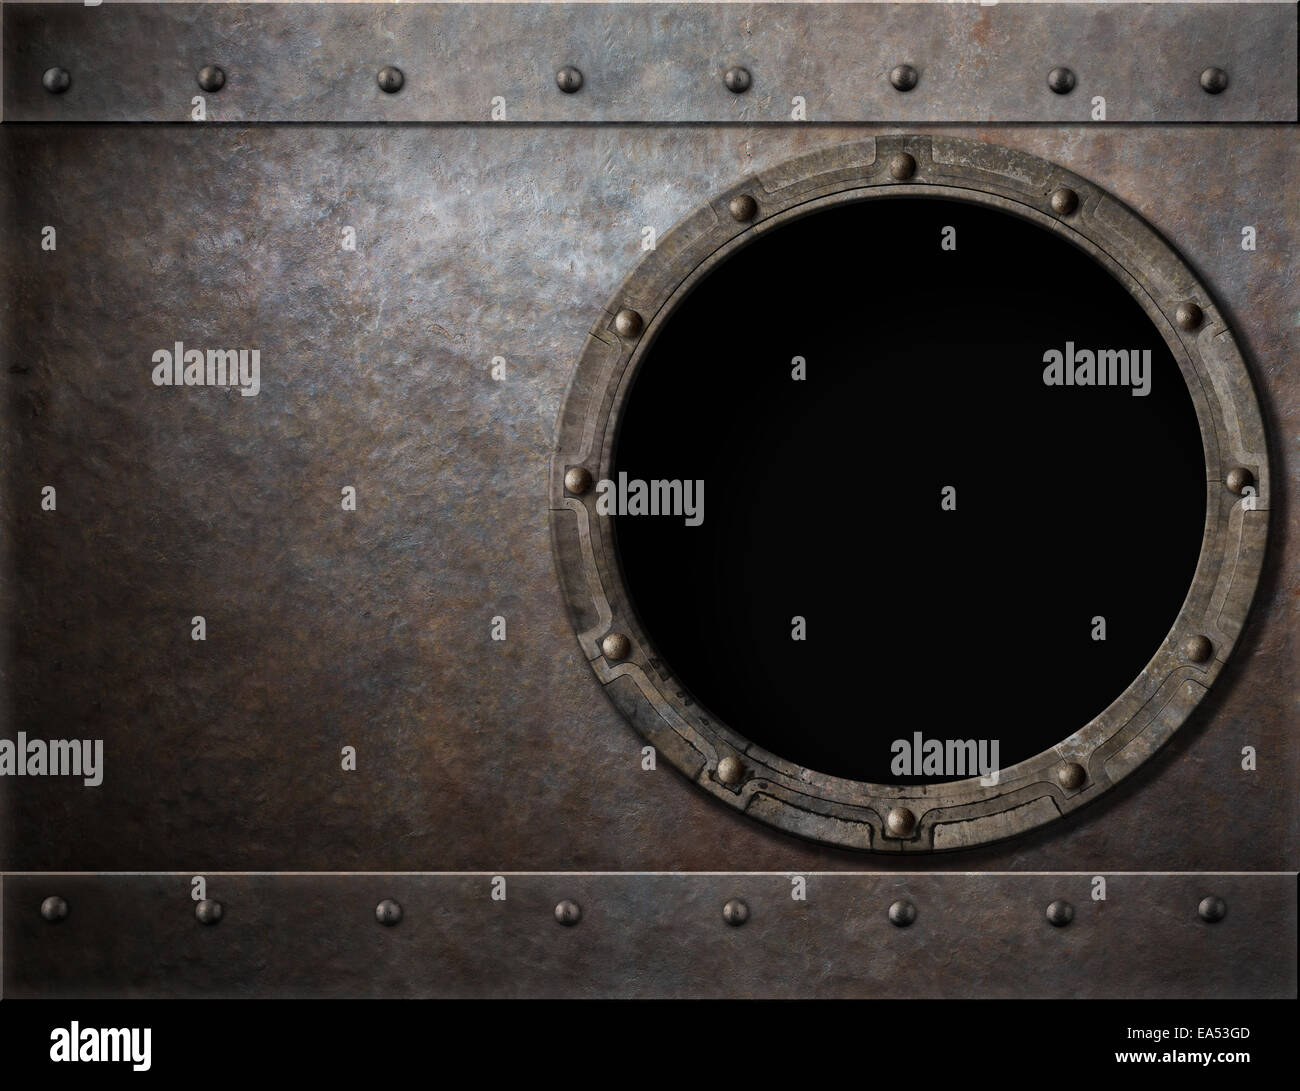 submarine or battleship porthole steam punk metal background Stock Photo